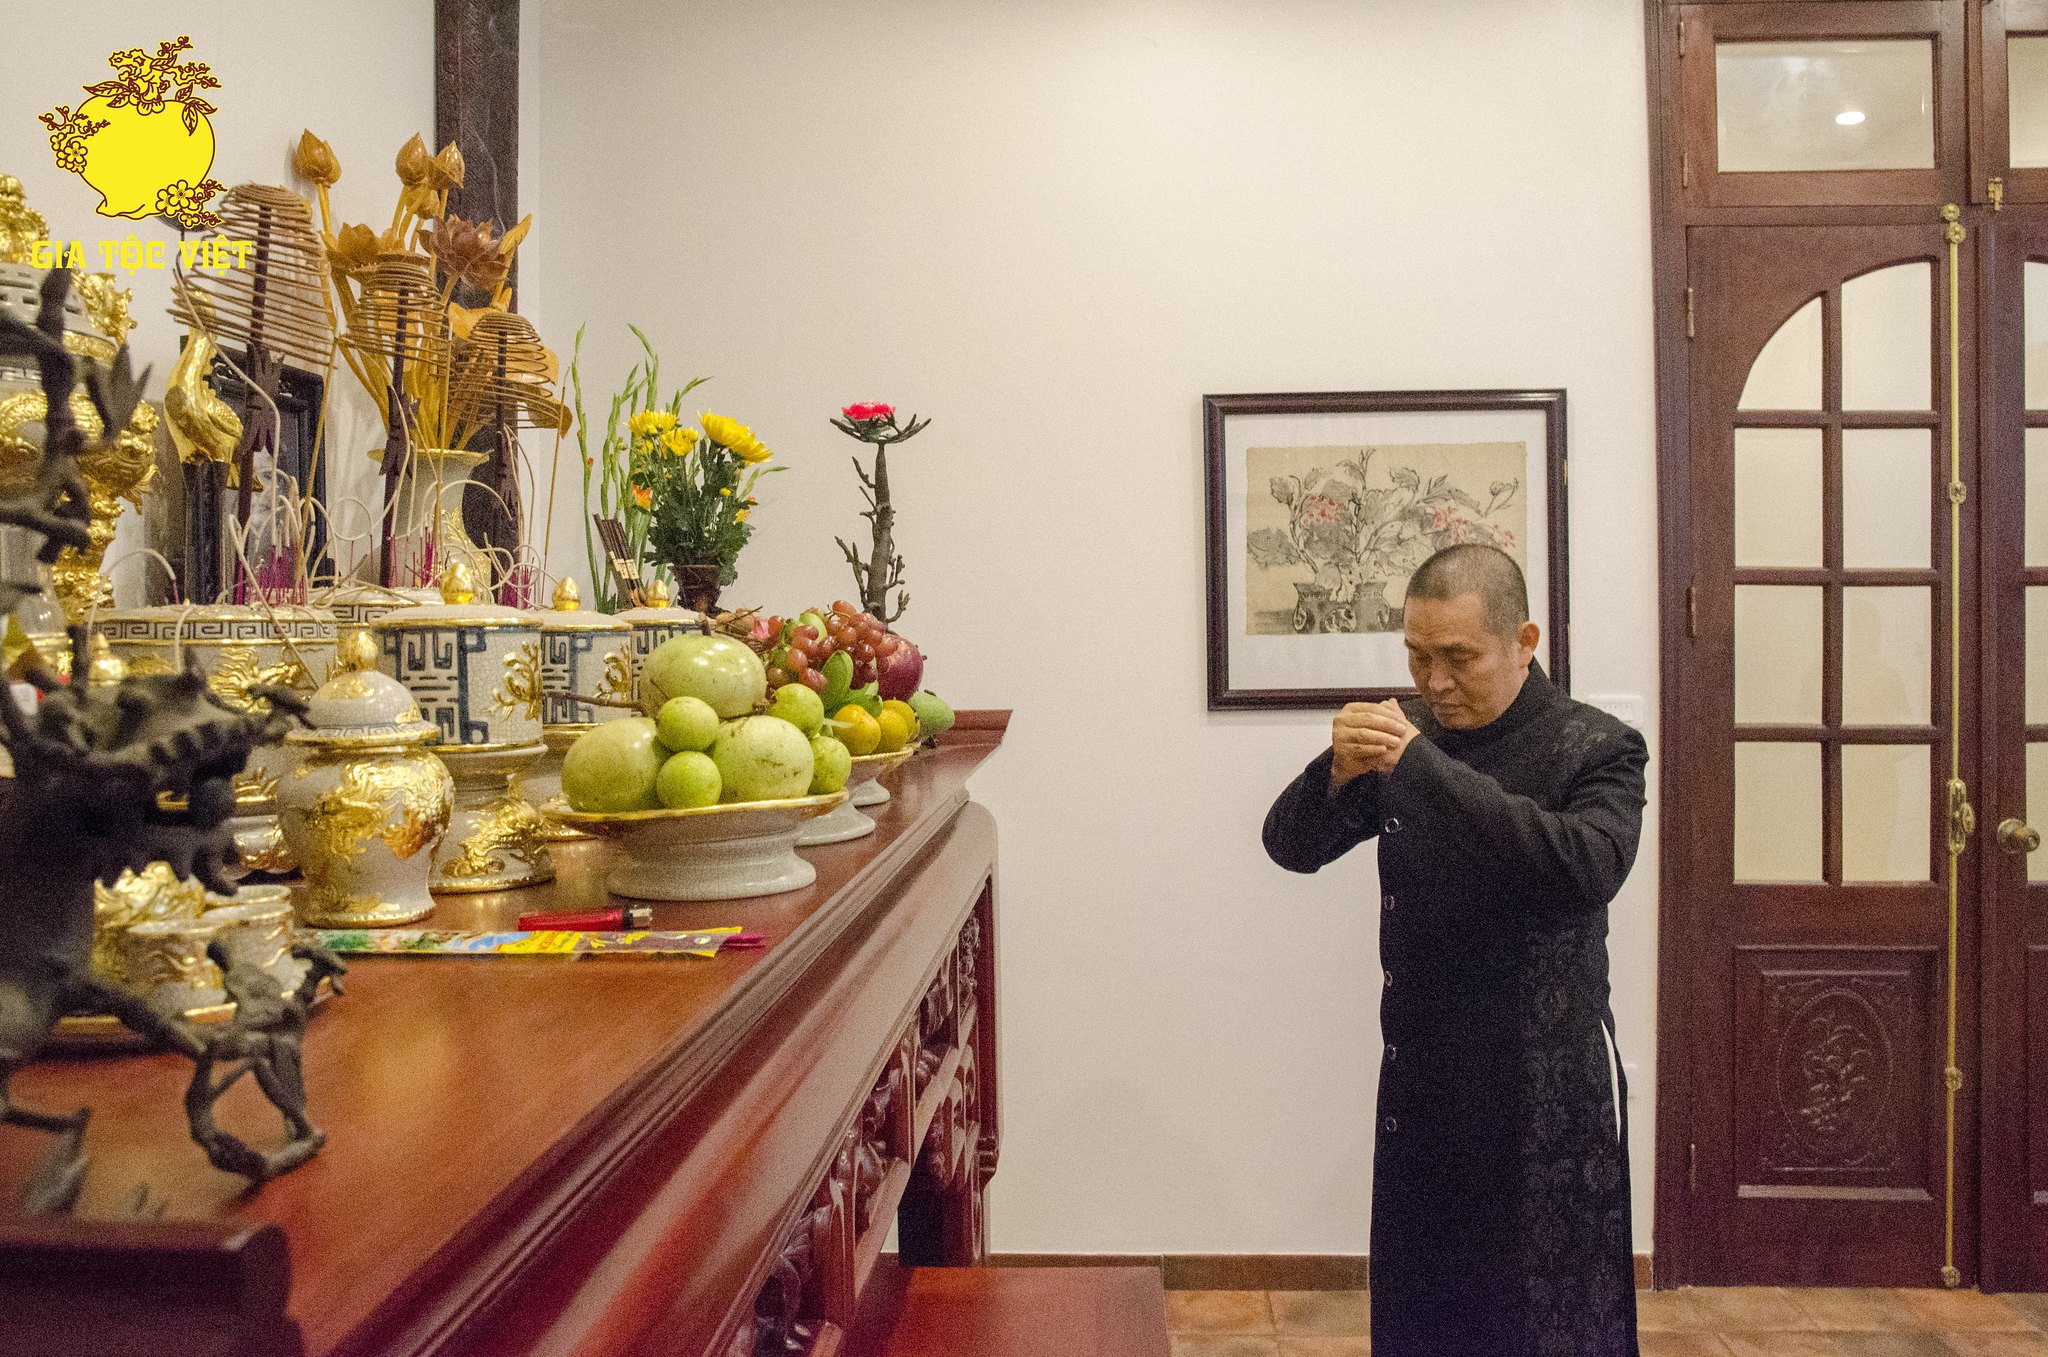 Ra mắt: 3 Bộ sưu tập đồ thờ Gia Tộc Việt dành cho Chung cư và Nhà phố 2020